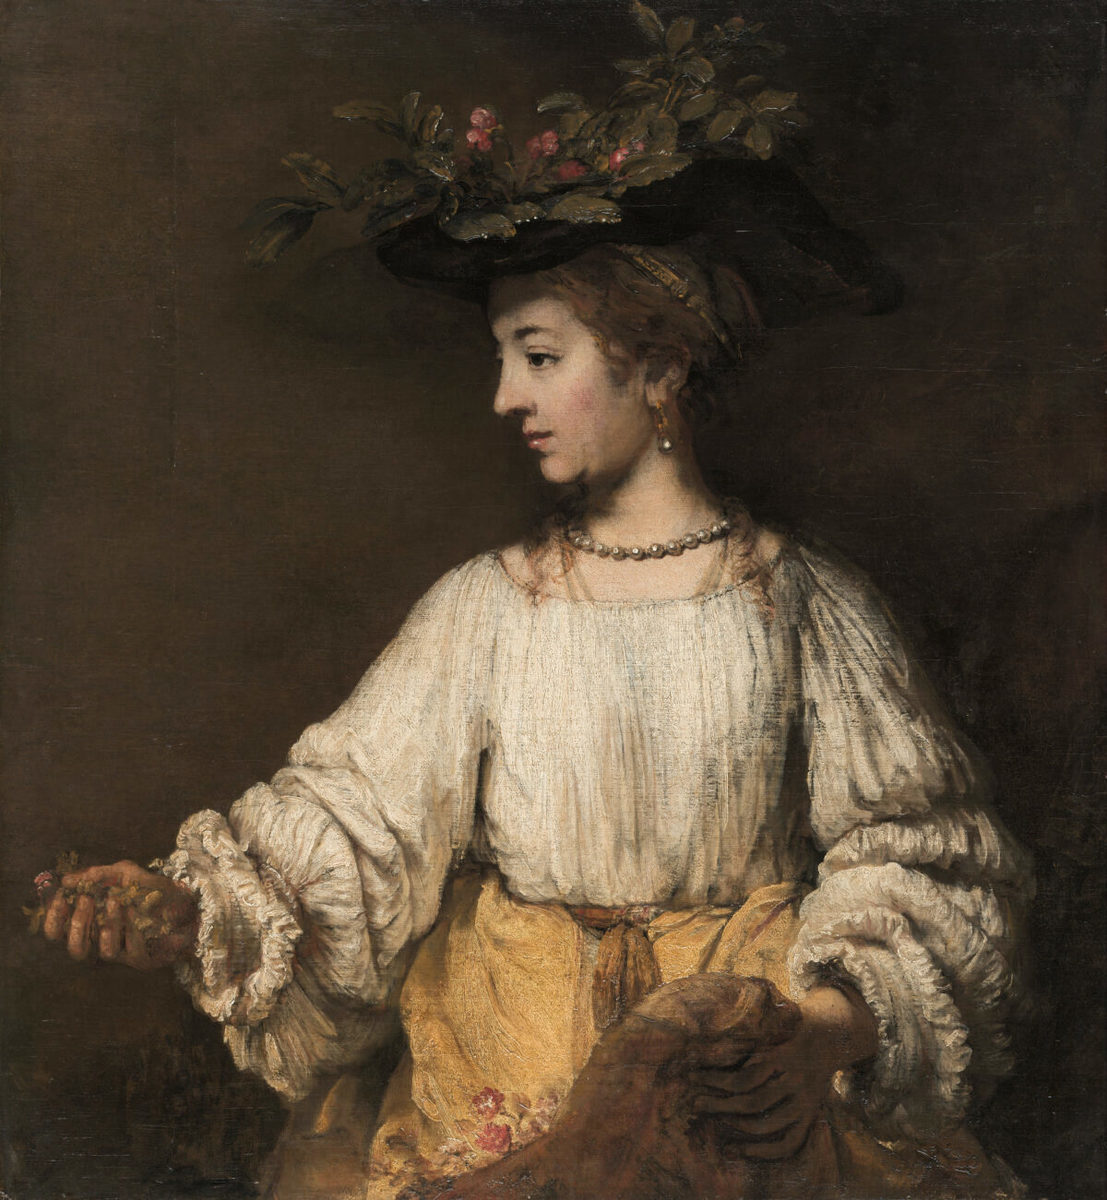 倫勃朗（Rembrandt），《芙勞拉》（Flora），約1654年。油彩、畫布，大都會藝術博物館，紐約，美國。阿徹·米爾頓·亨廷頓（Archer M Huntington）於1926年捐念以紀念父親柯利斯·亨廷頓（Collis Potter Huntington）；大都會藝術博物館，紐約。（The Metropolitan Museum of Art提供）